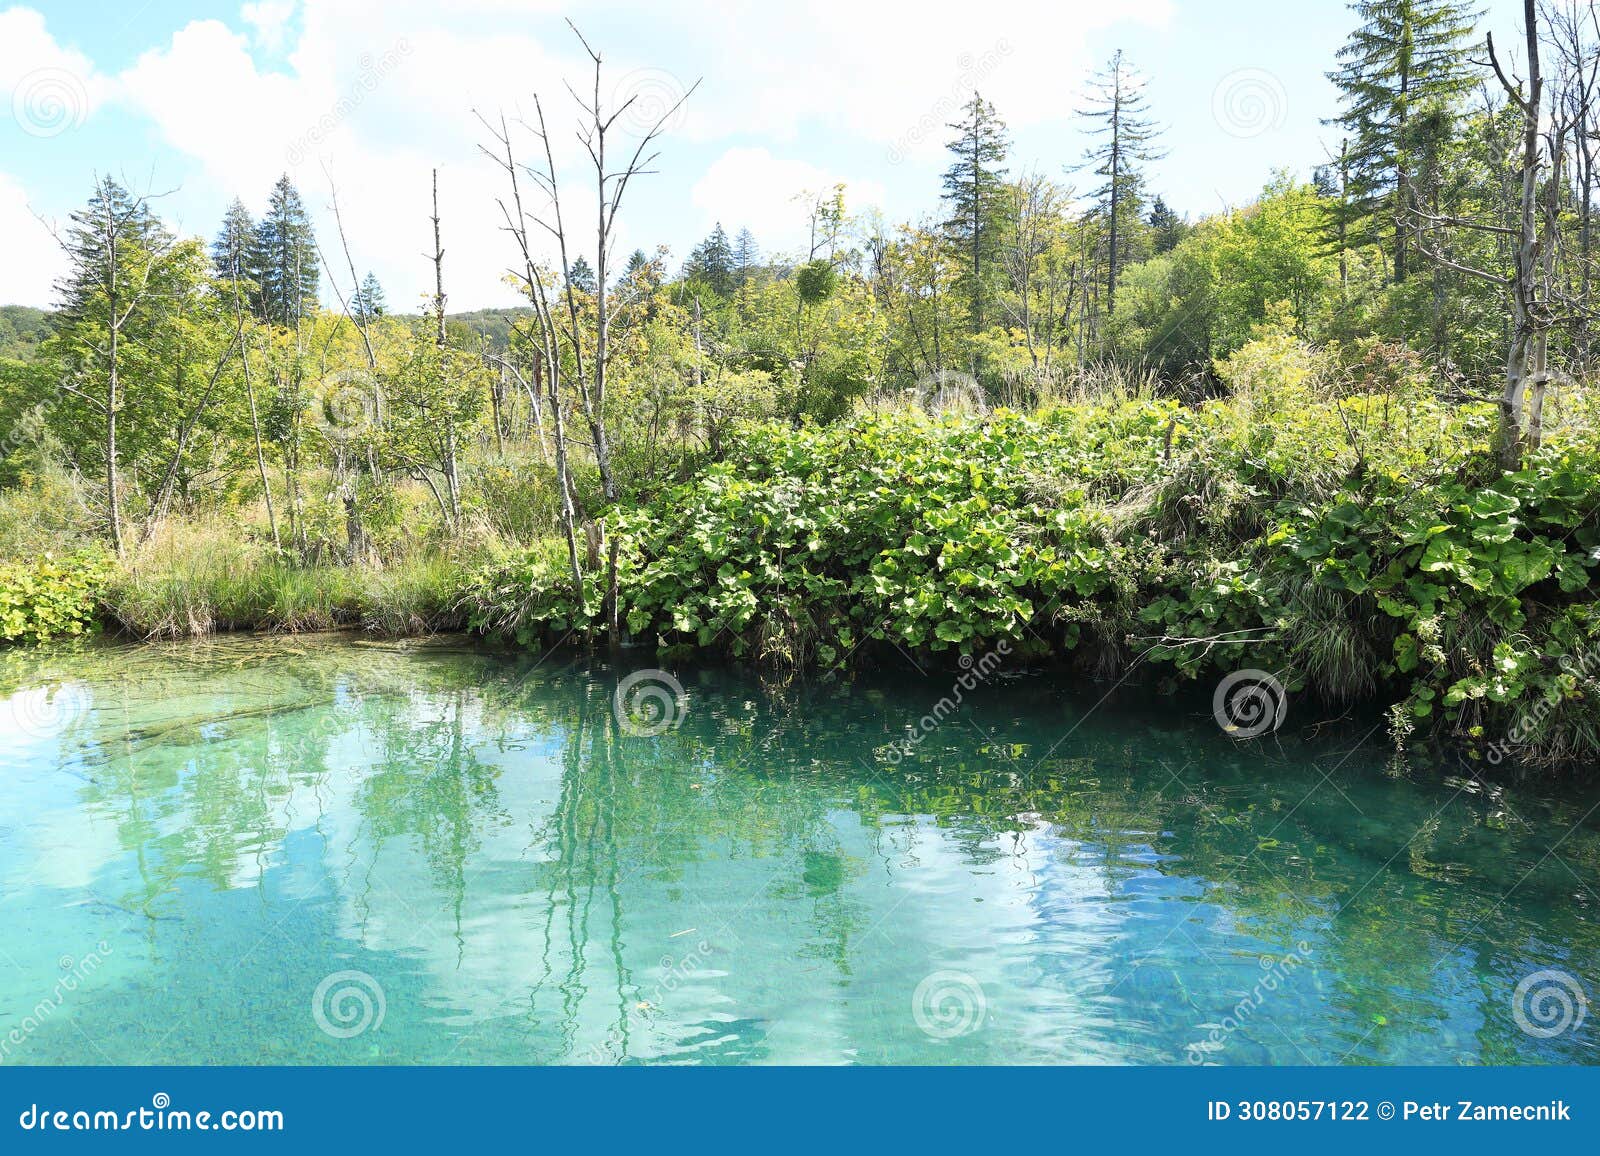 lake and wetlands on plitvicka jezera in croatia